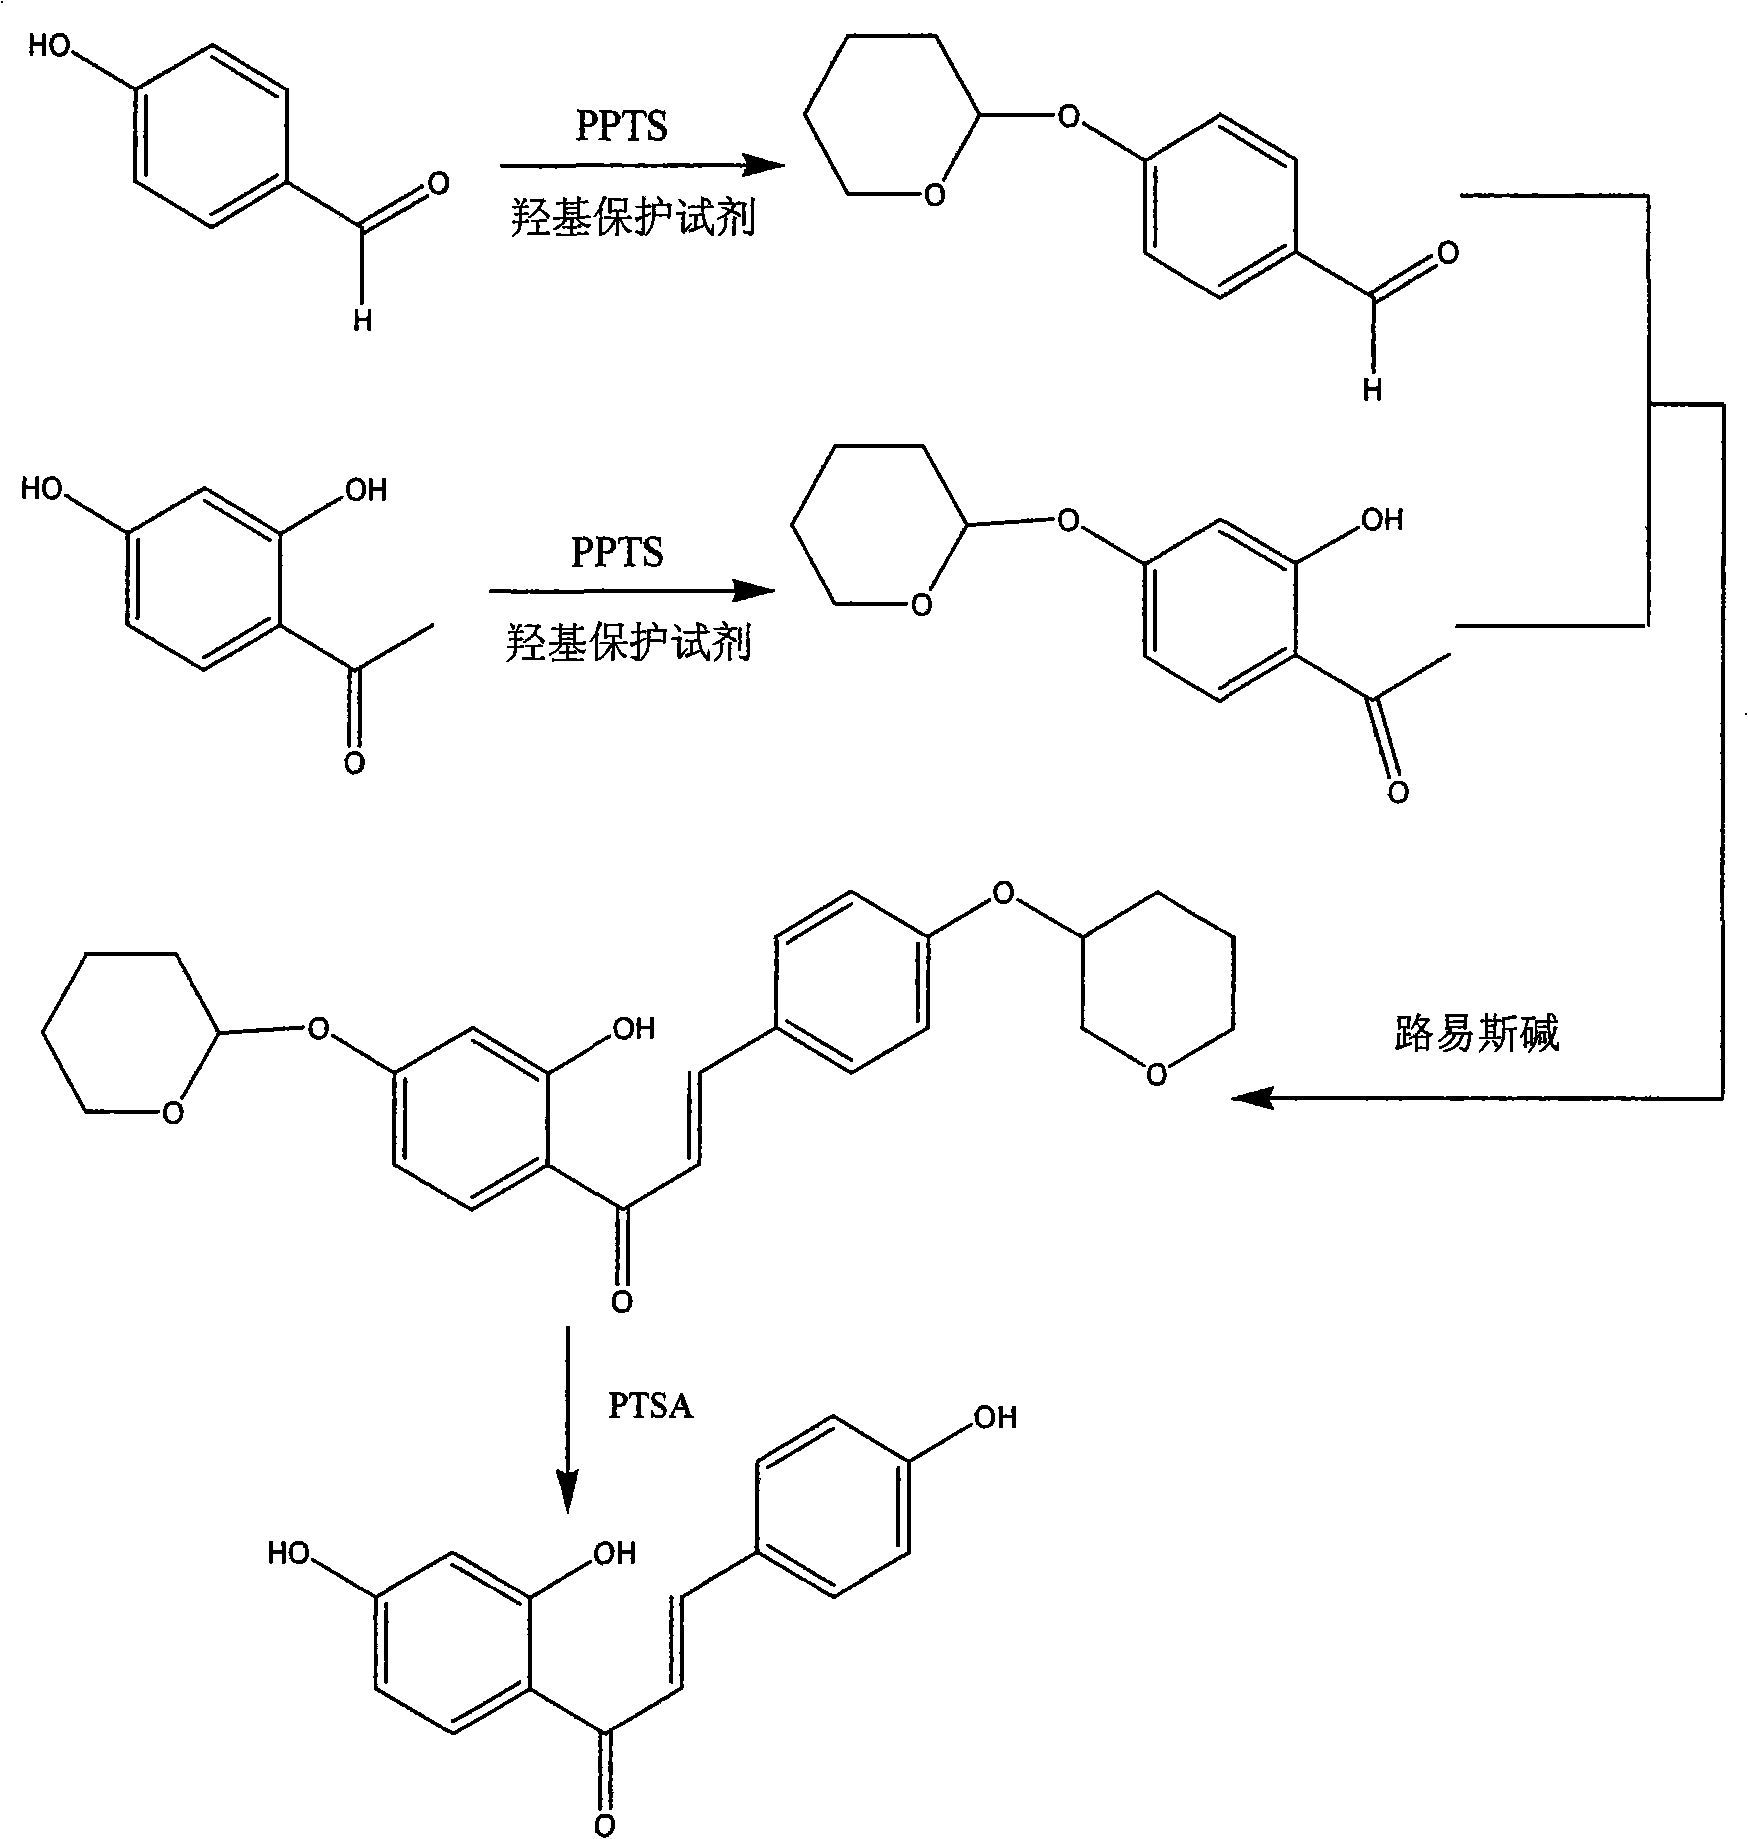 Method for synthesizing isoliquiritigenin